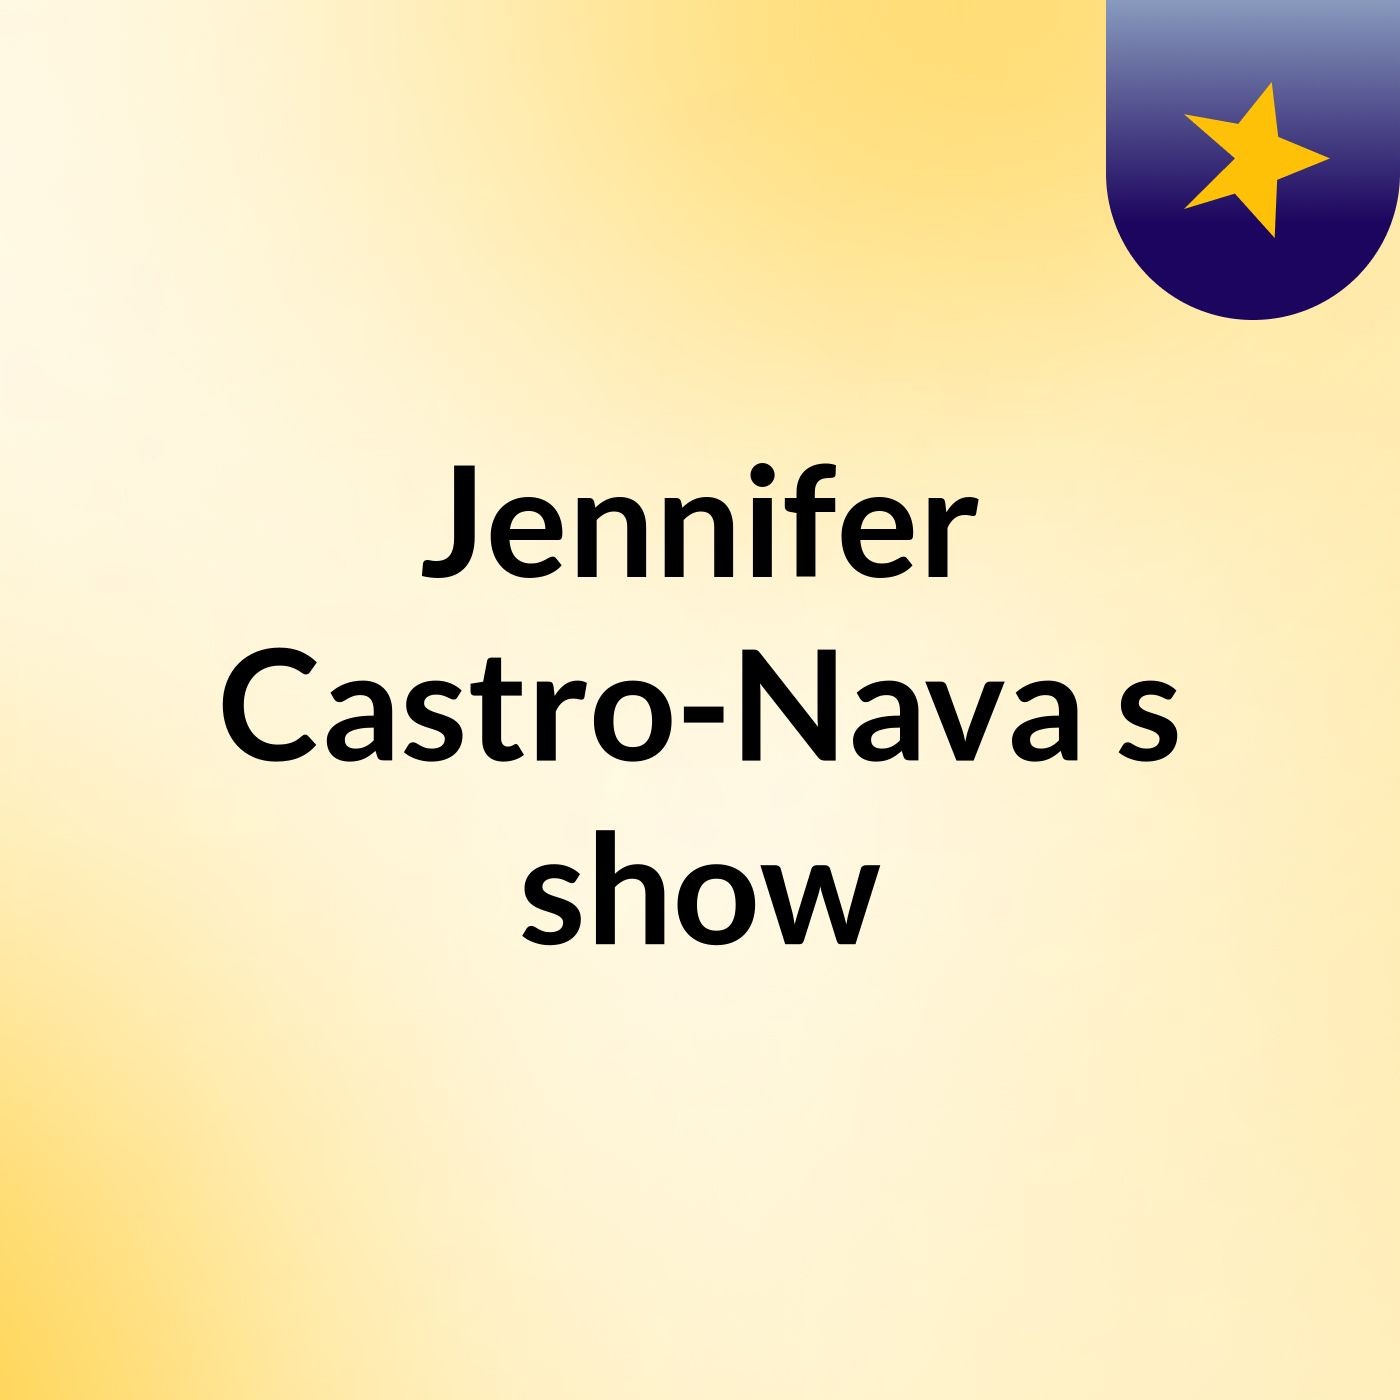 Jennifer Castro-Nava's show